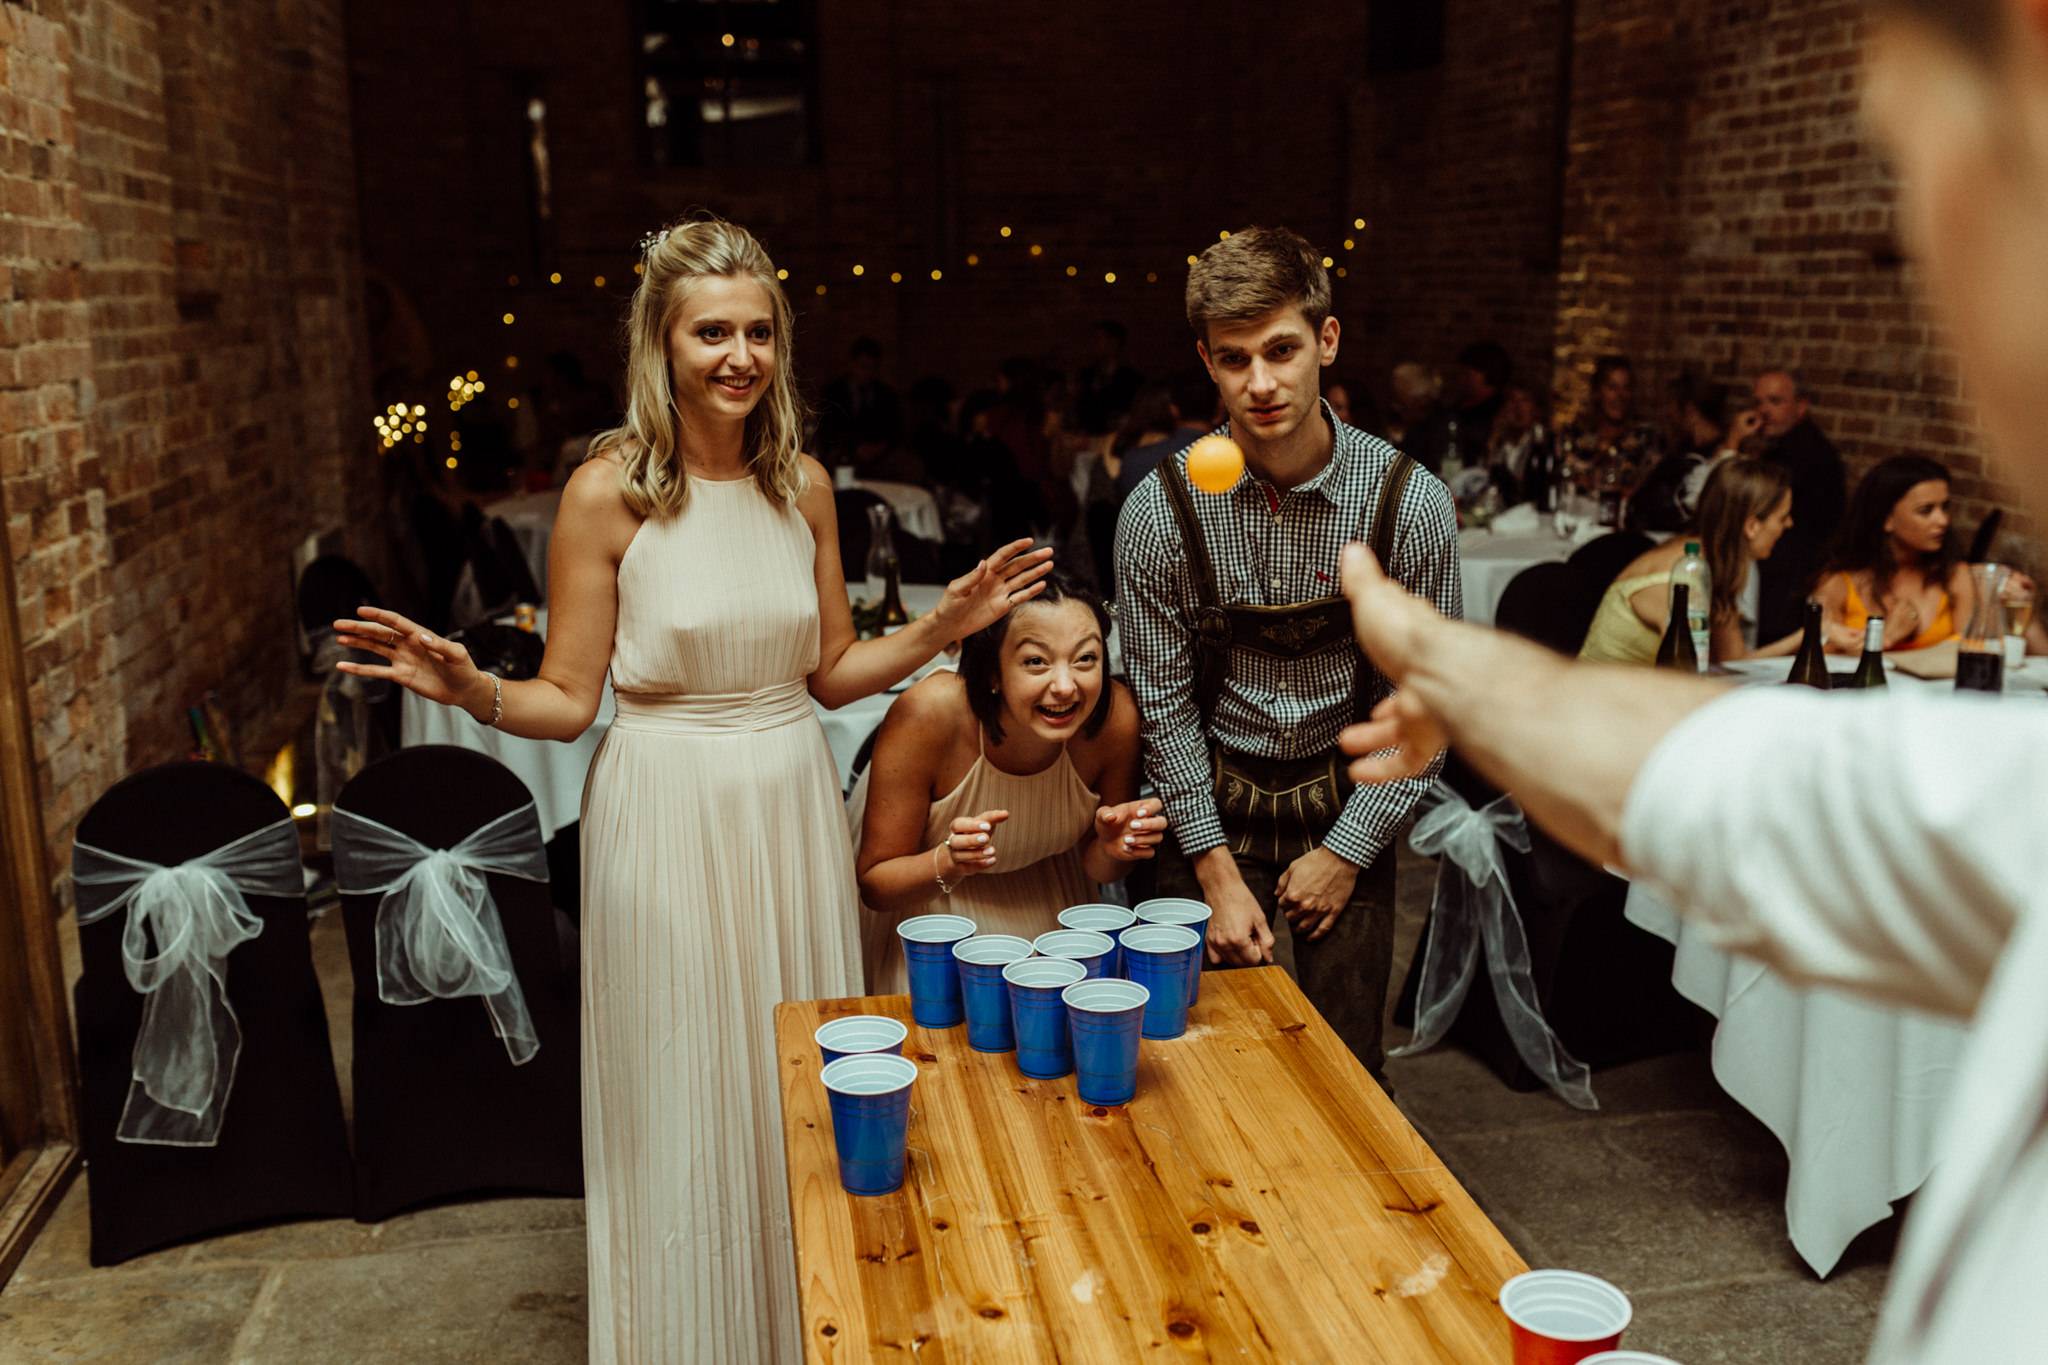 Конкурсы на свадьбу: смешные без тамады – праздник для тебя